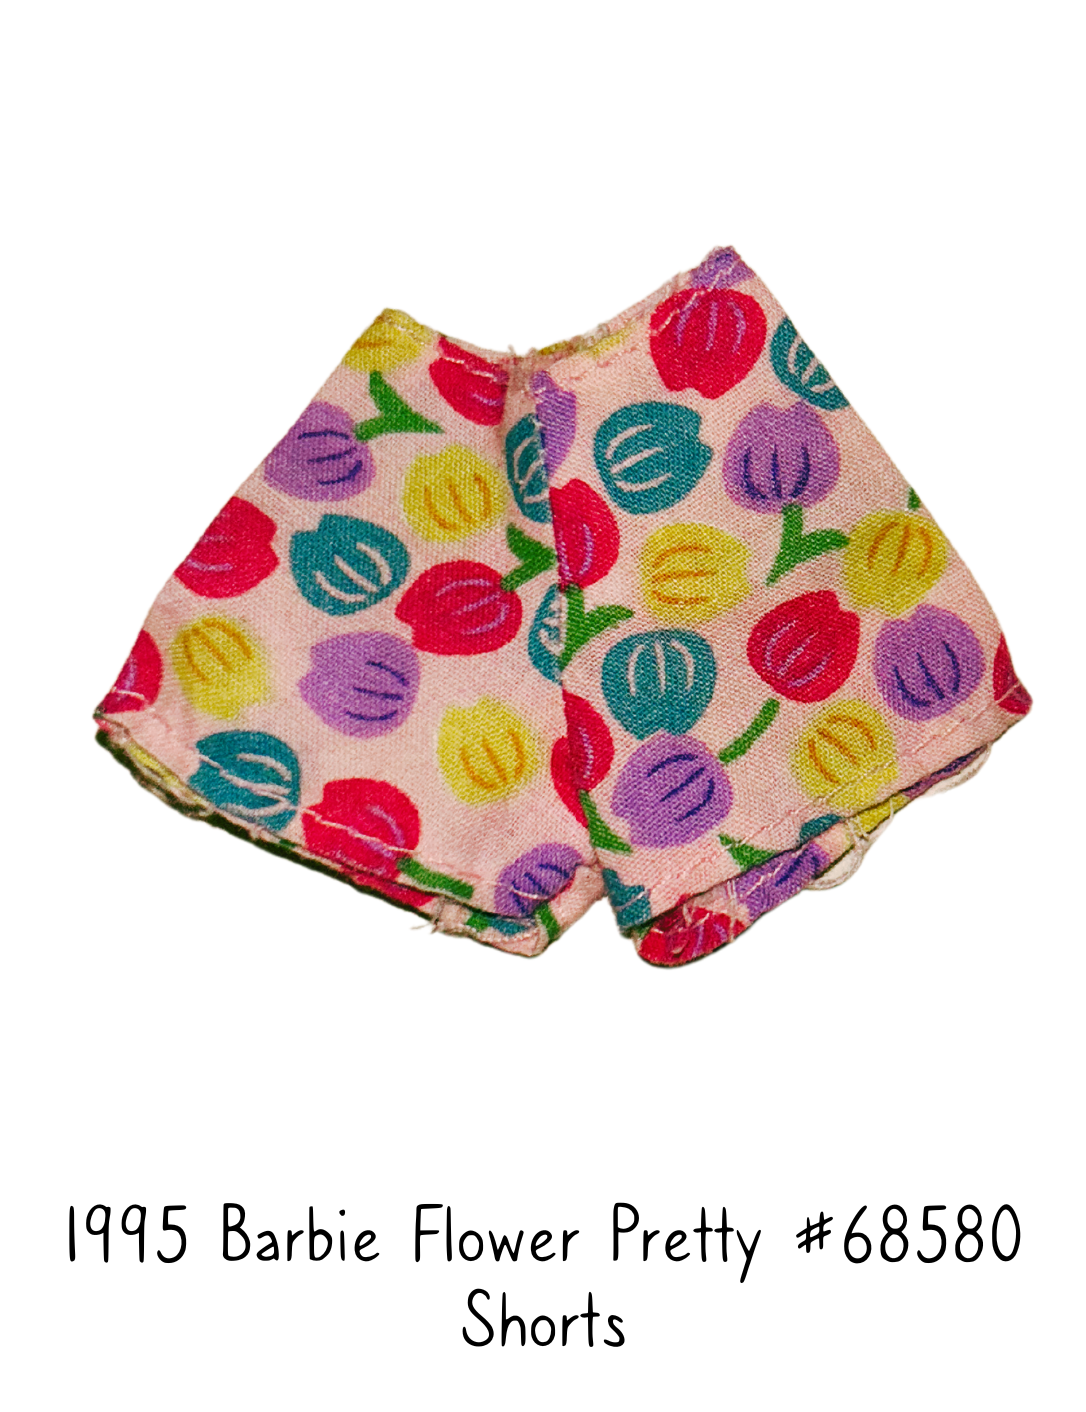 1995 Barbie Flower Pretty #68580 Fashion Doll Shorts